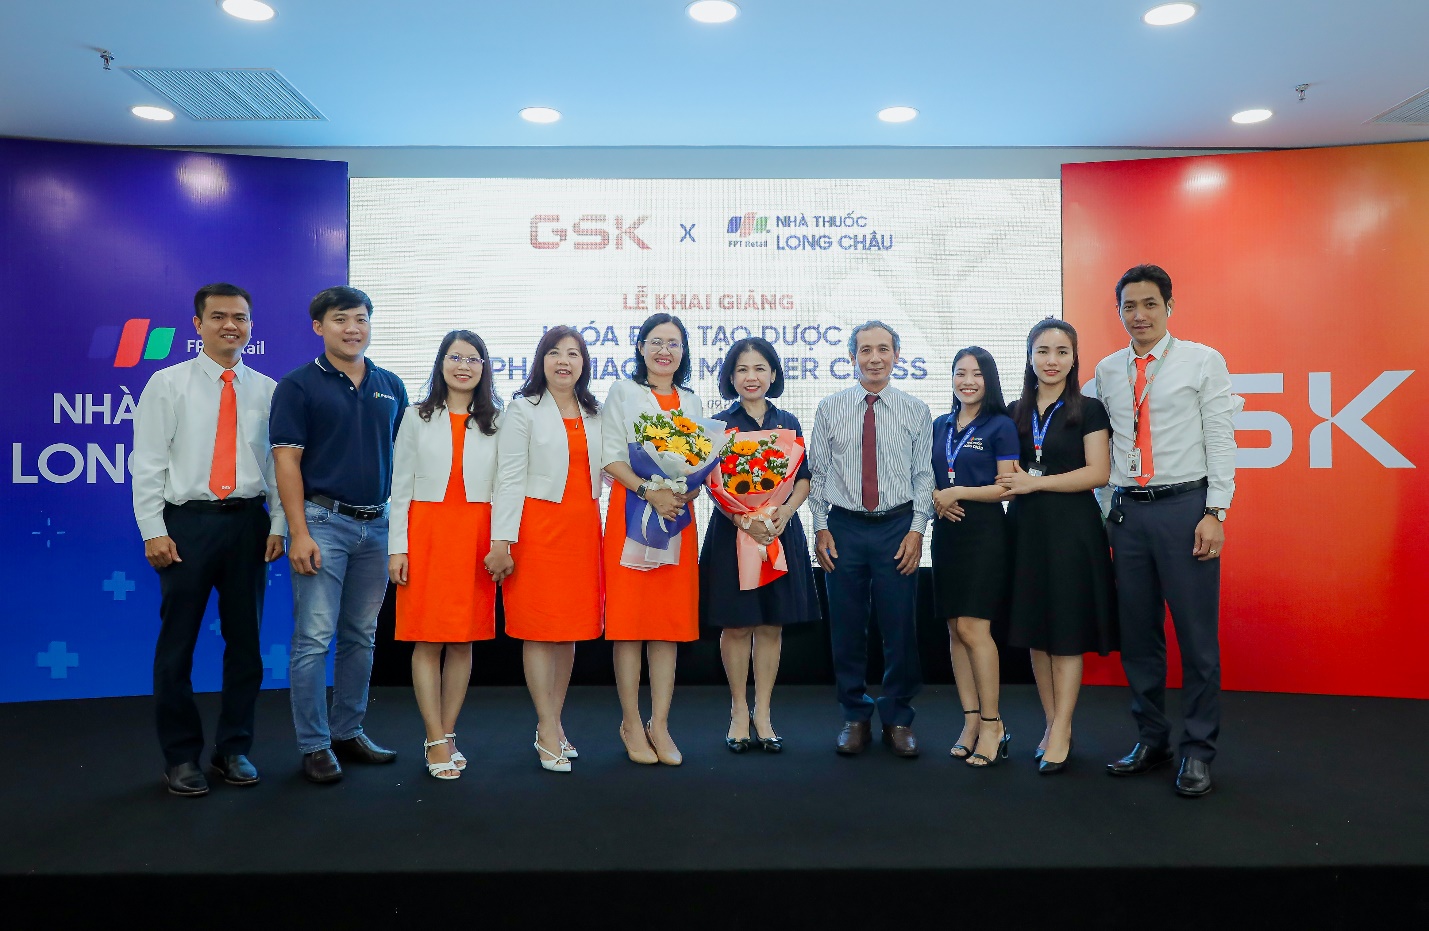 FPT Long Châu cùng GSK Việt Nam tổ chức khóa đào tạo dược sĩ “Pharmacist Master Class” tiên phong tại Việt Nam - ảnh 4